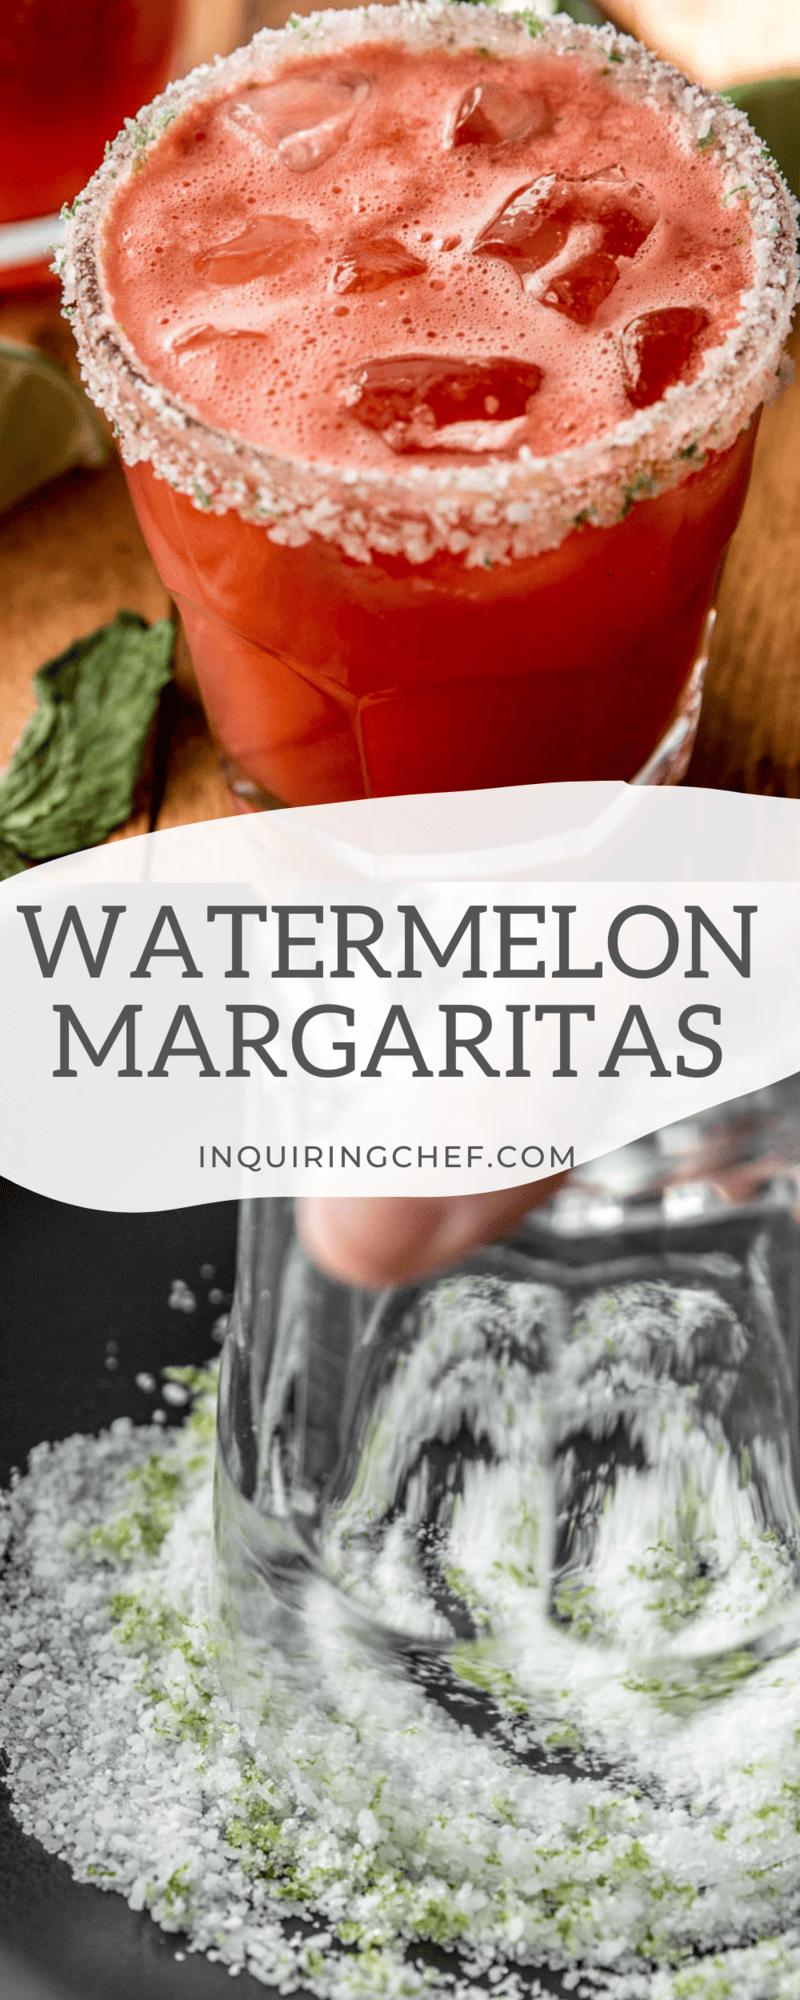 watermelon margaritas